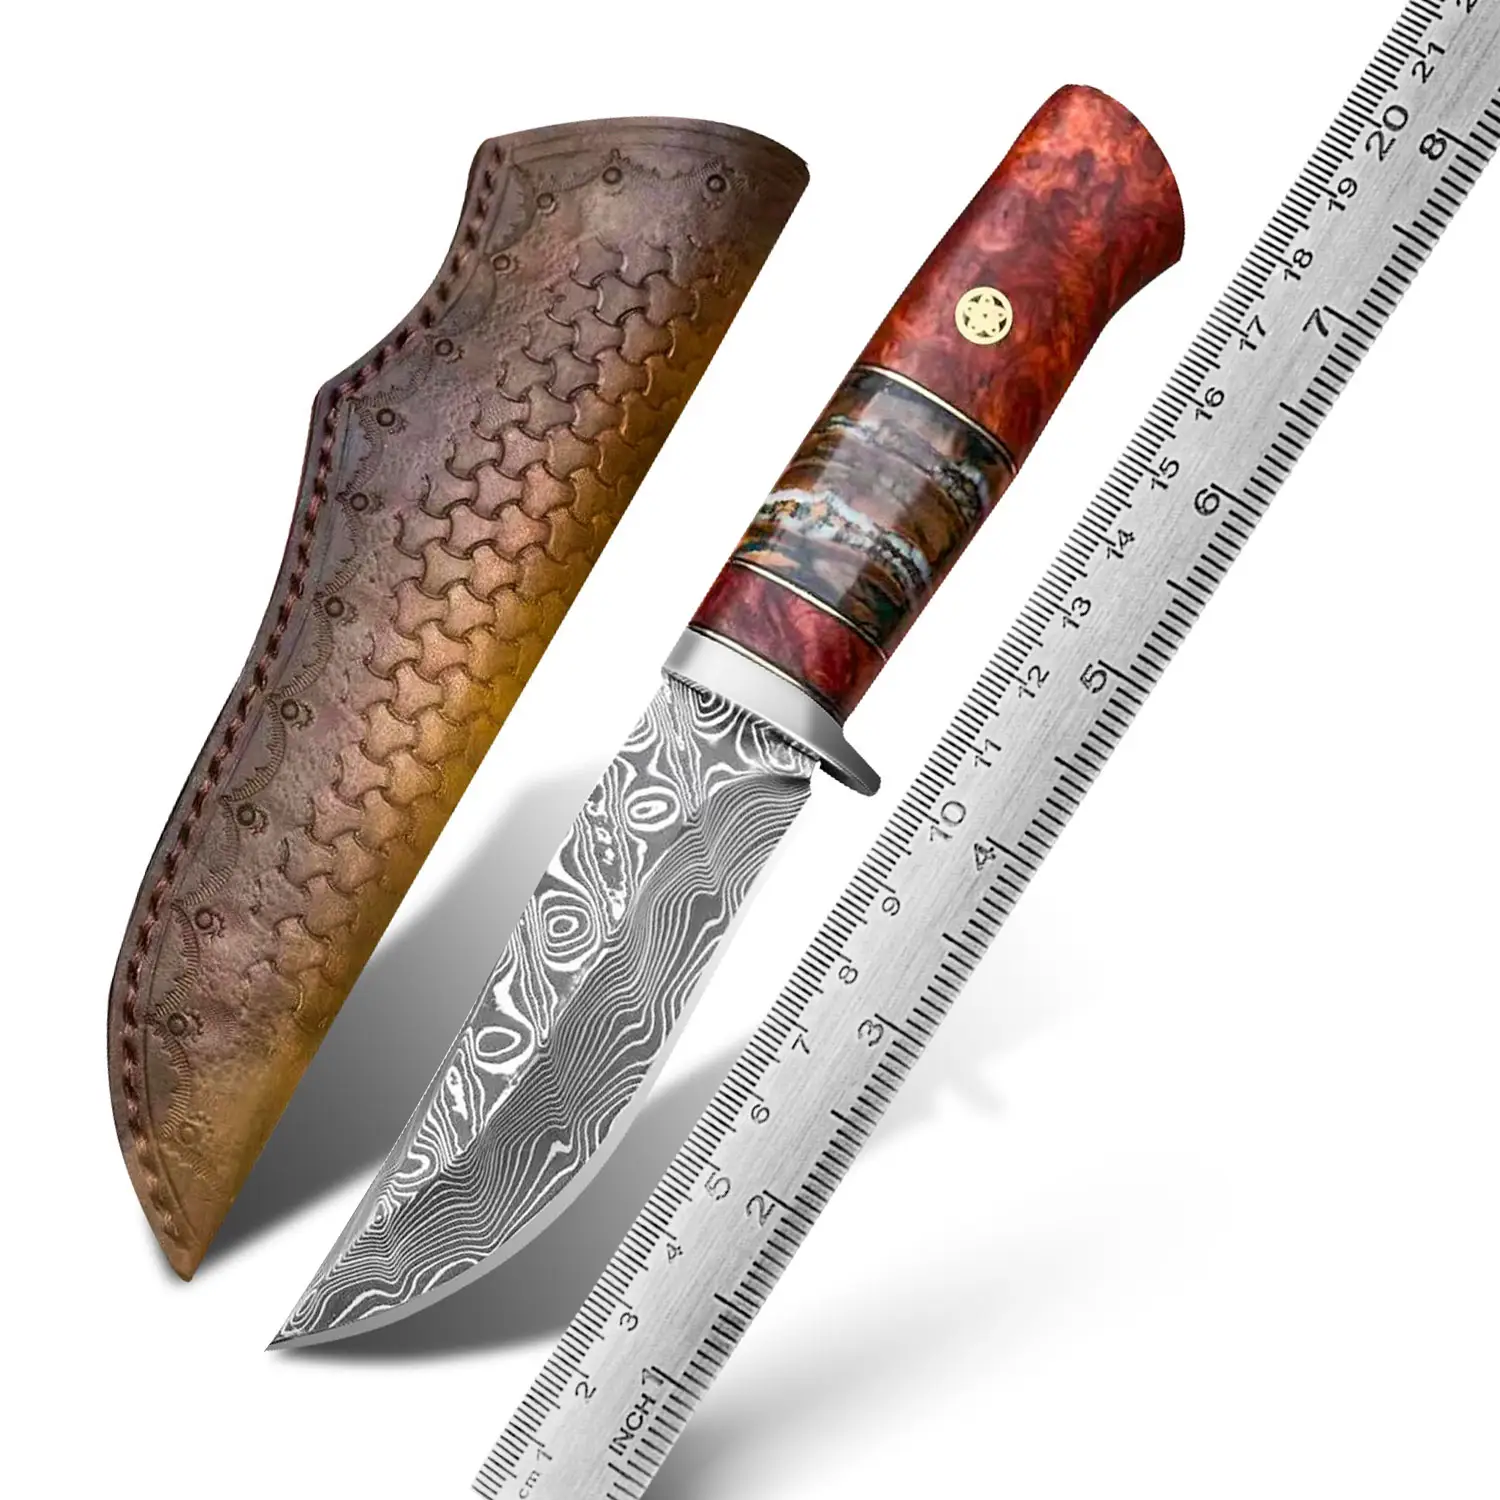 Fósil de mamut de madera estabilizada hecha a mano, cuchillos Bowie de hoja fija de acero VG10 con funda, cuchillo de caza de Damasco de supervivencia al aire libre